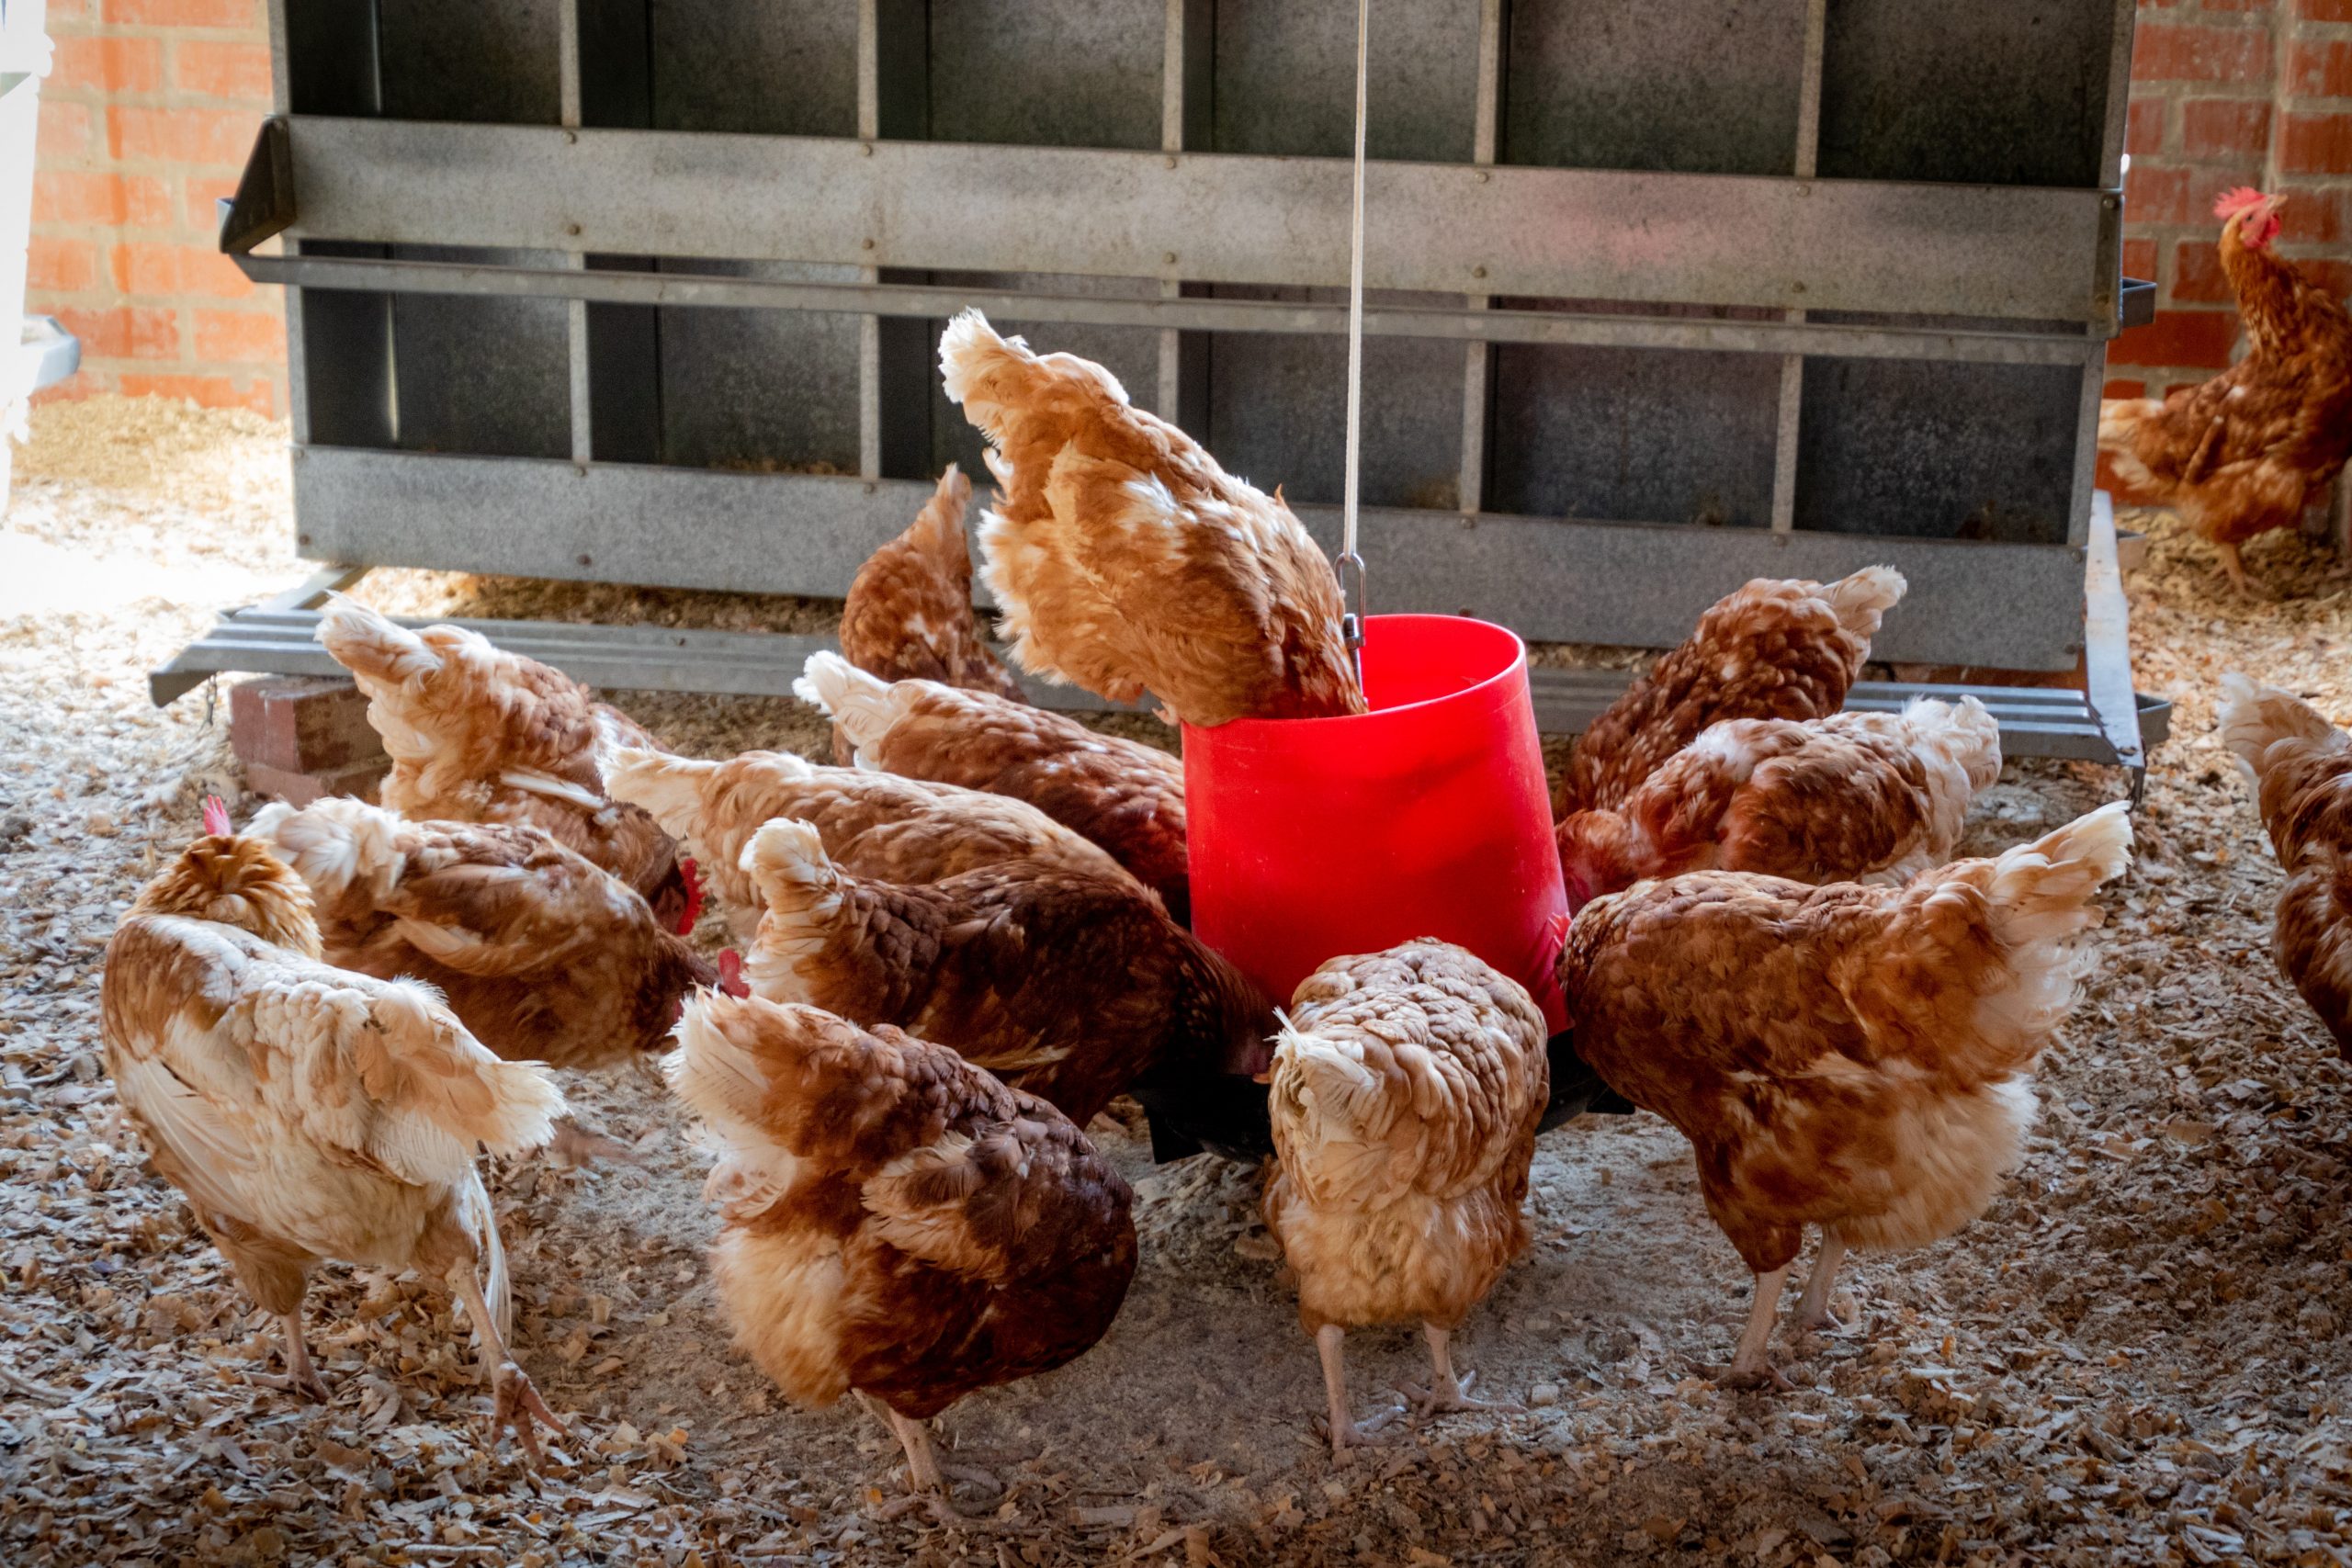 Lo que faltaba: Rusia advierte sobre gripe aviar que podría transmitirse entre humanos